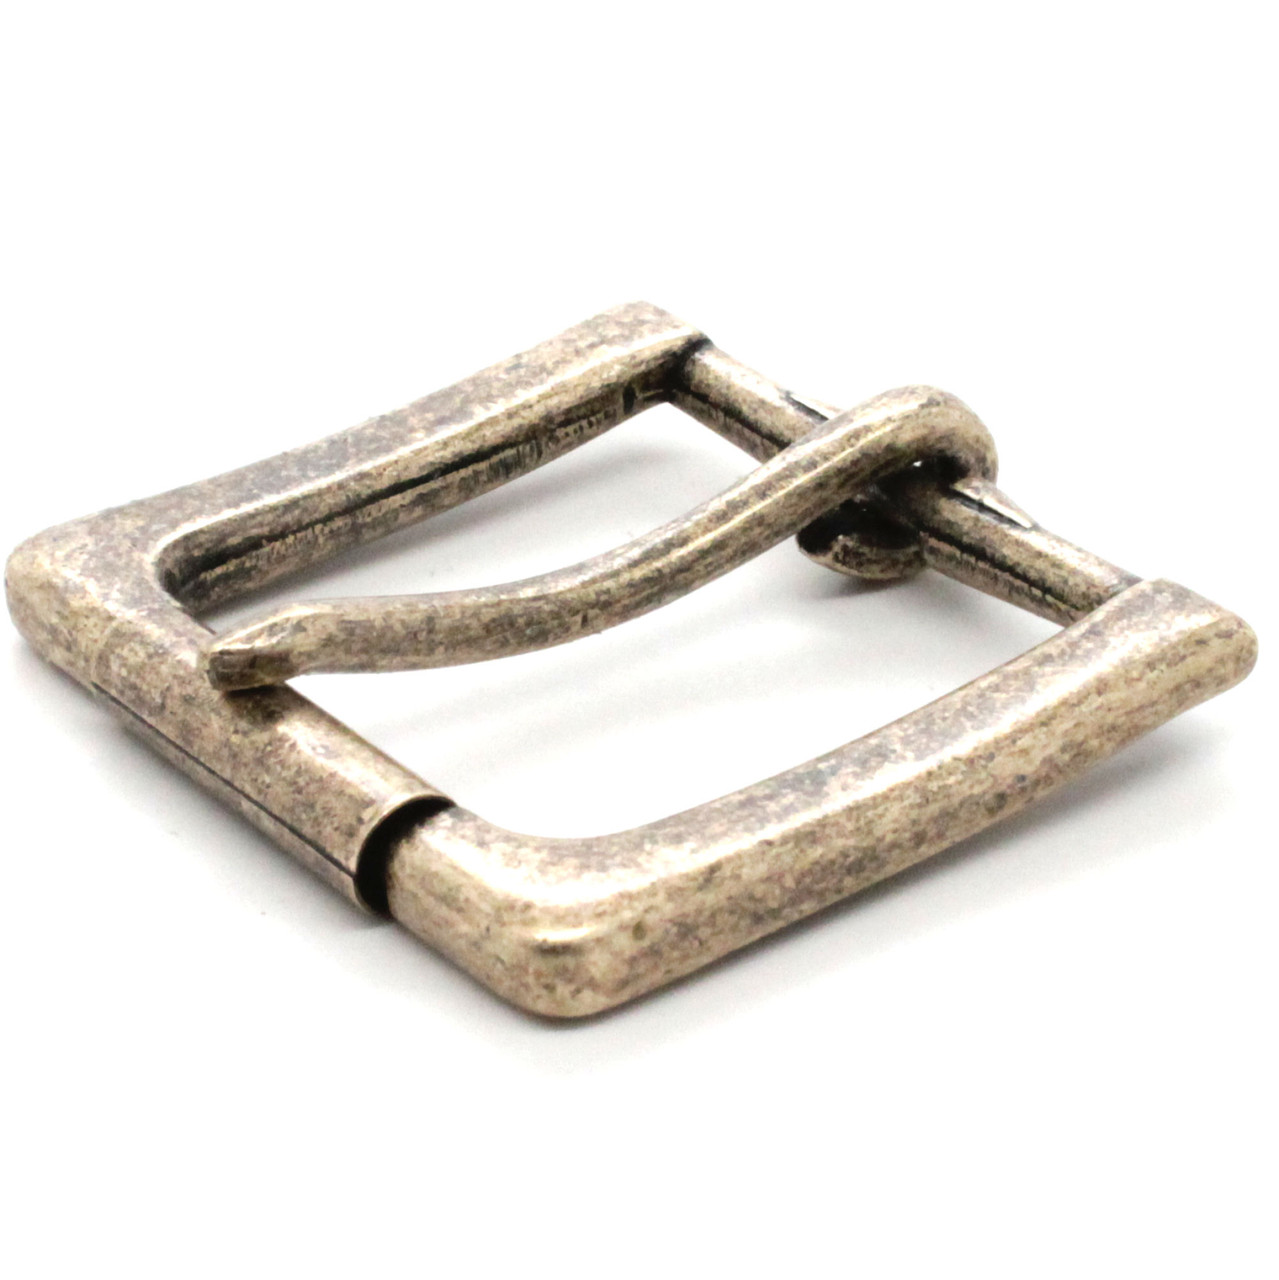 Rugged Roller Belt Antique Brass Buckle 1-1/2 2020-09 - Stecksstore